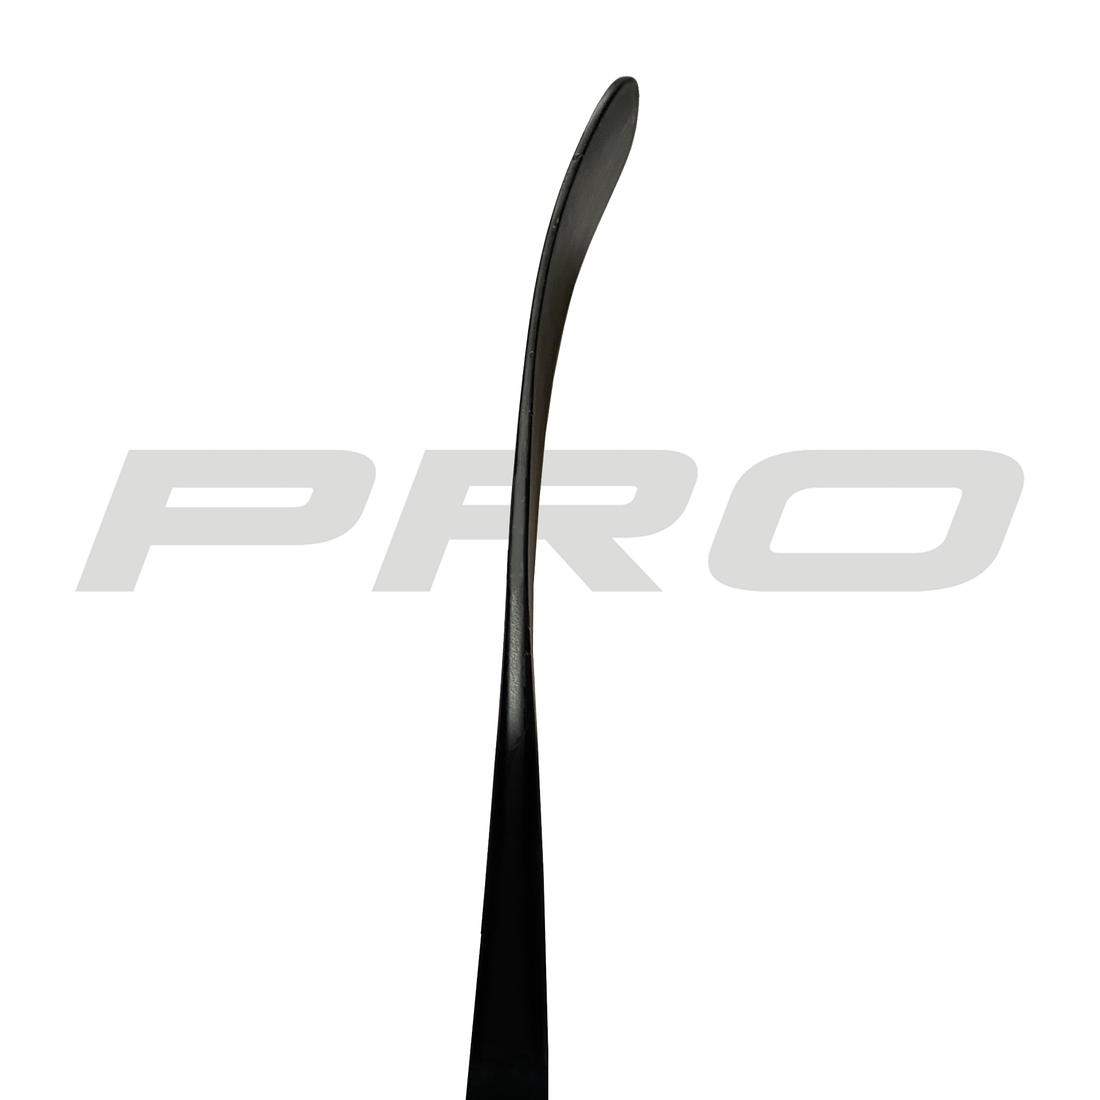 PRO71 (ST: Malkin Pro) - Red Line (375 G) - Pro Stock Hockey Stick - Left